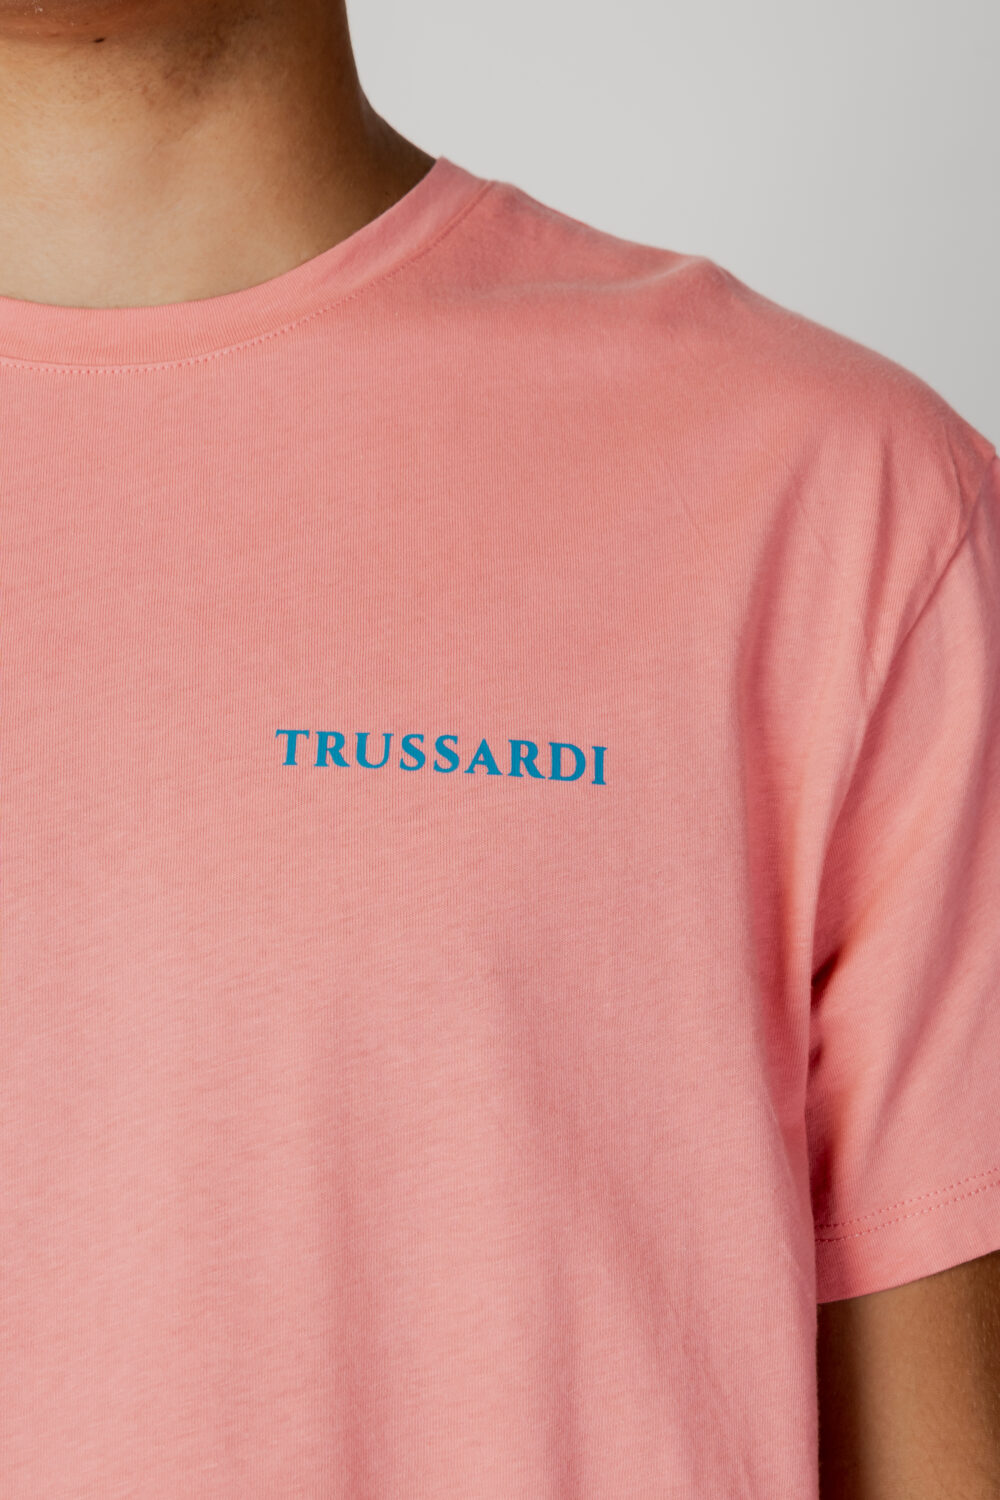 T-shirt Trussardi Beachwear logo Pesca - Foto 2